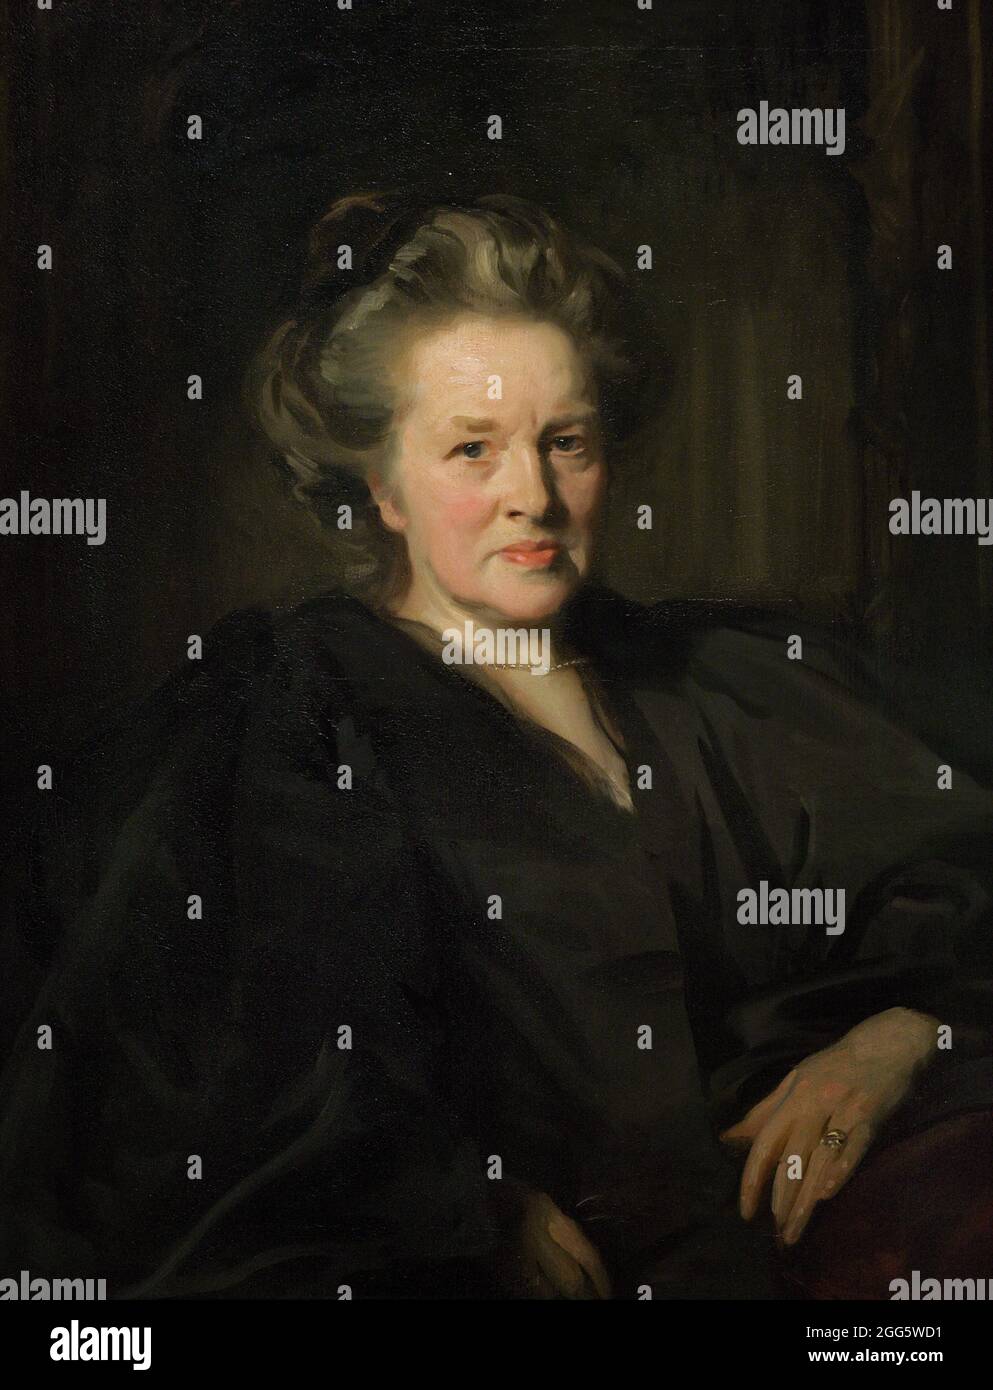 Elizabeth Garrett Anderson (1836-1917). Elle a été la première femme médecin anglaise en 1865. Portrait de John Singer Sargent (1856-1925). Huile sur toile (83,8 x 66 cm), 1900. Galerie nationale de portraits. Londres, Angleterre. Royaume-Uni. Banque D'Images